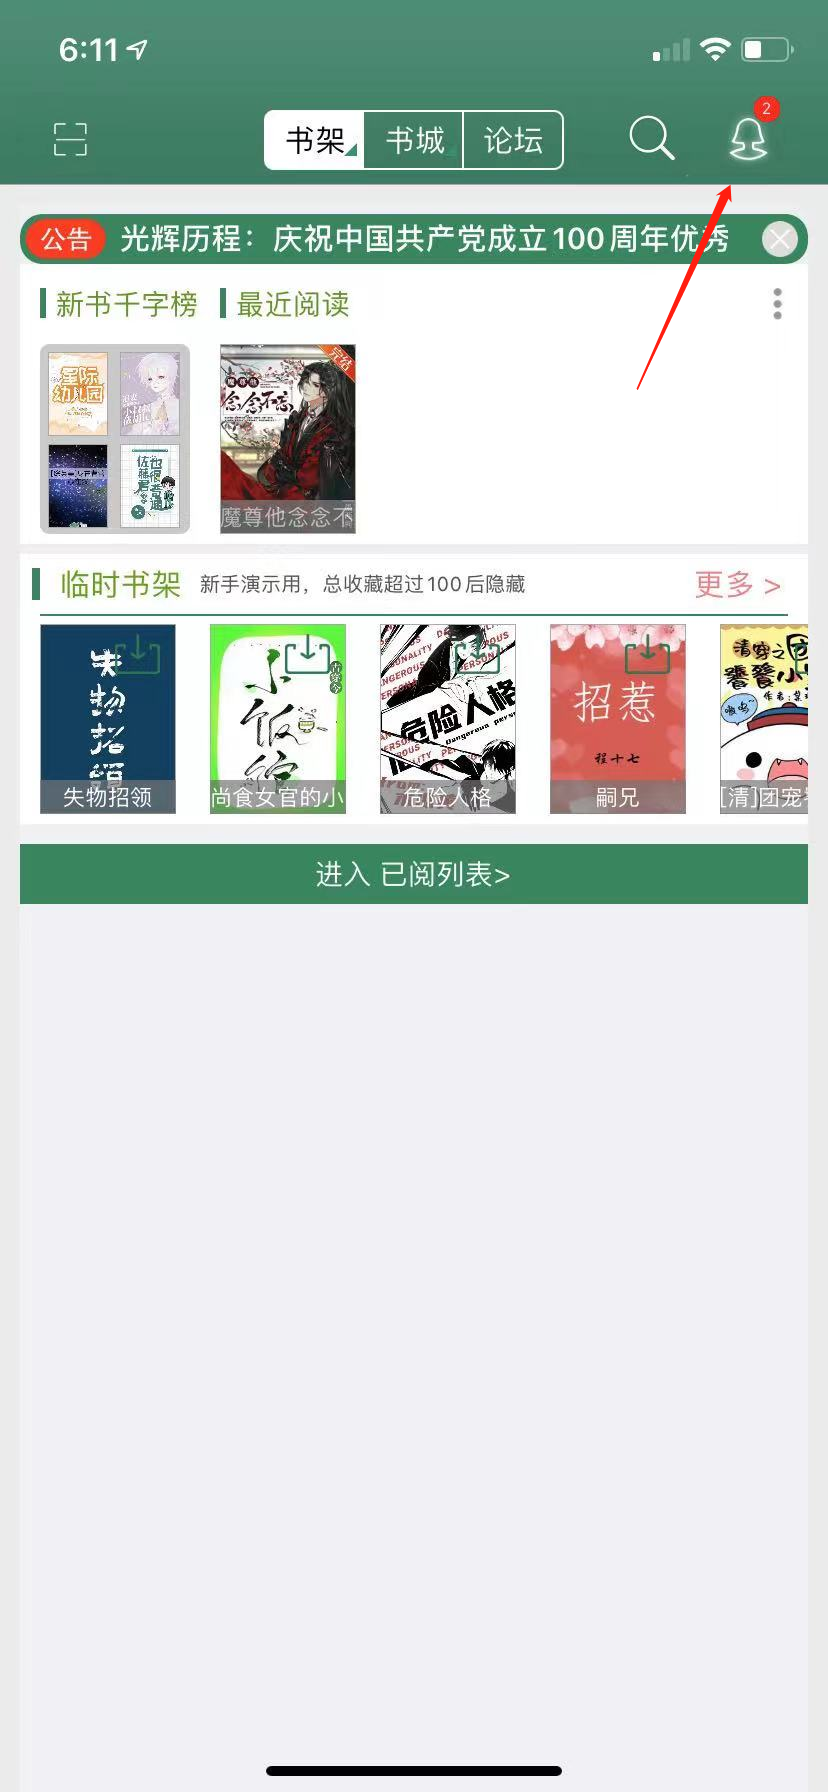 晋江文学城如何获得免费vip 晋江文学城获得免费vip图2